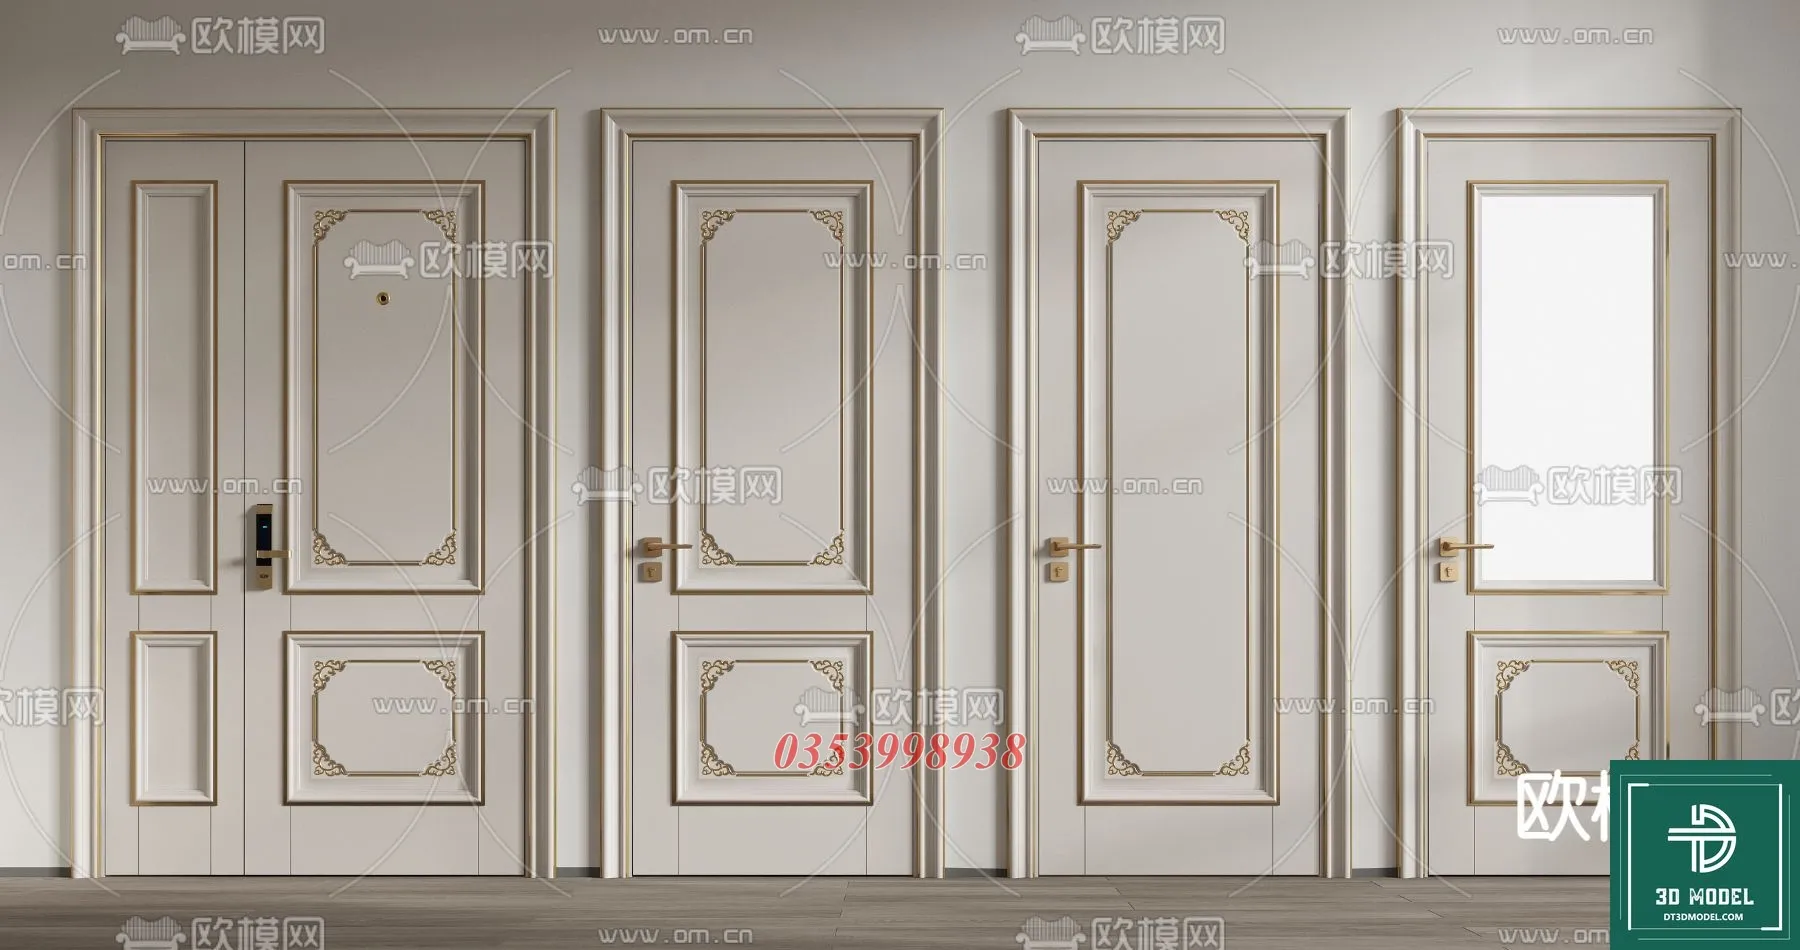 CLASSIC DOOR – 3dsmax MODELS – 108